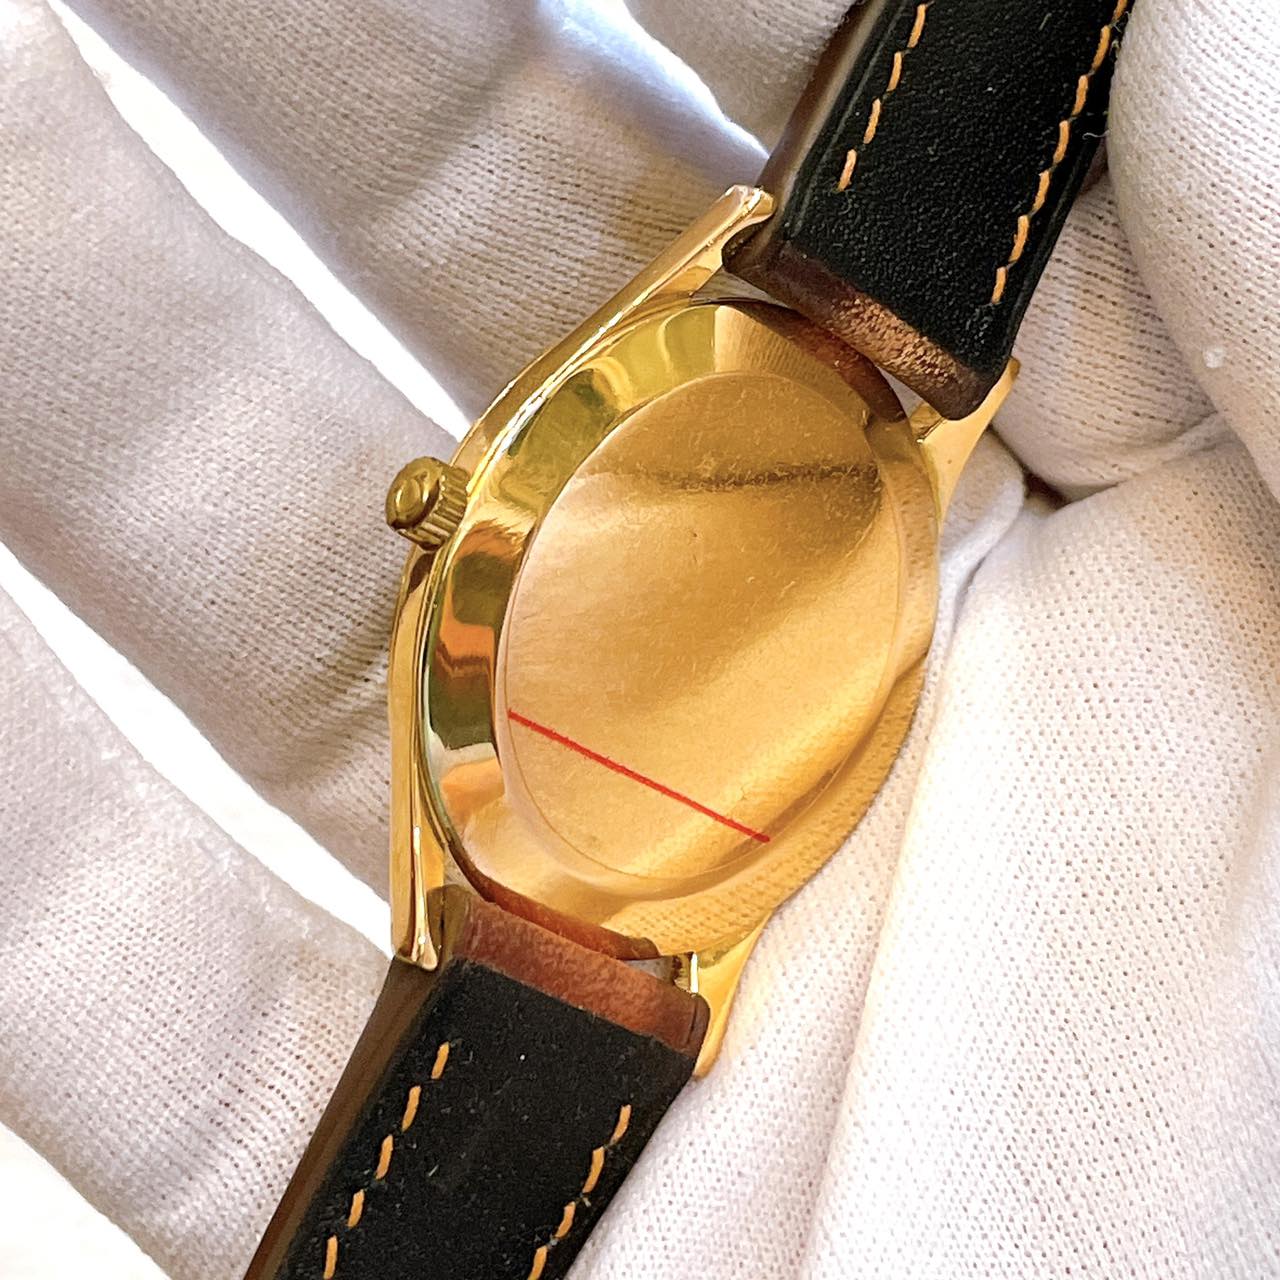 Đồng hồ cổ Omega De Ville Automatic siêu mỏng bọc vàng 14k chính hãng thụy Sĩ 